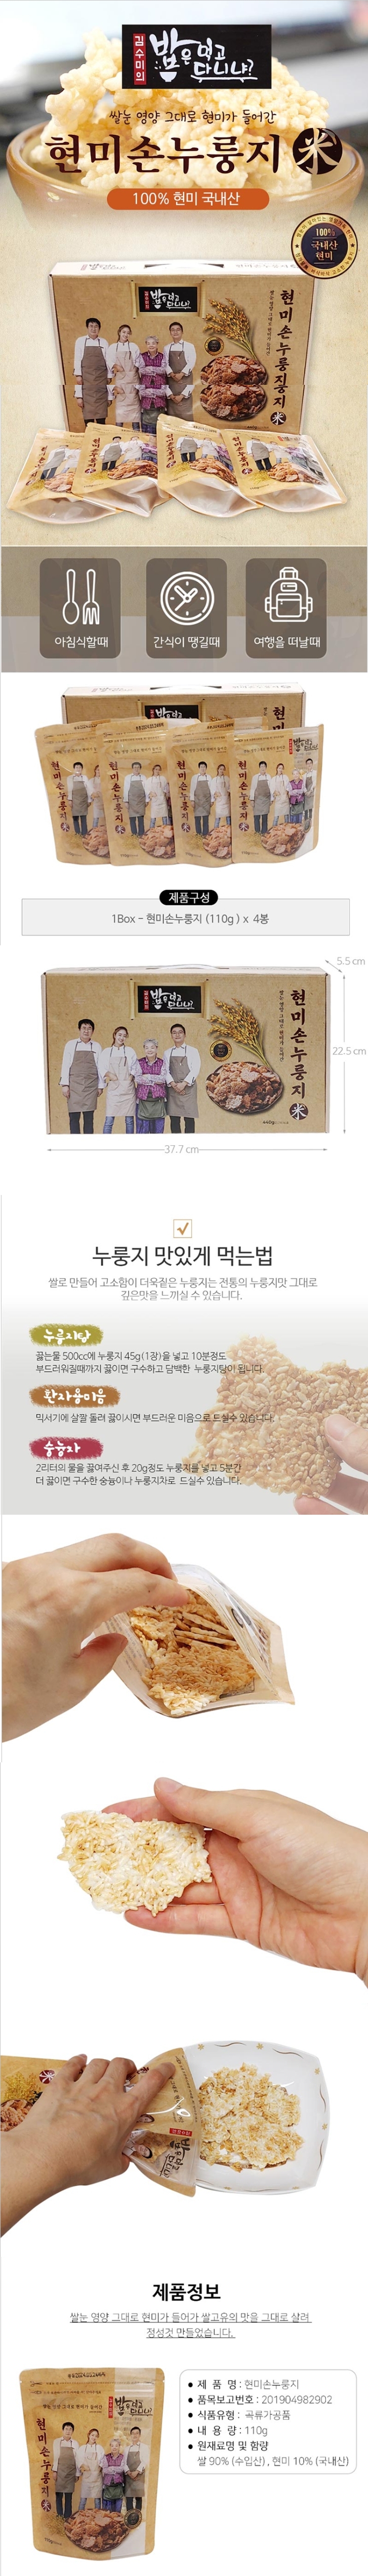 김수미의 밥은먹고다니냐 현미손누룽지세트